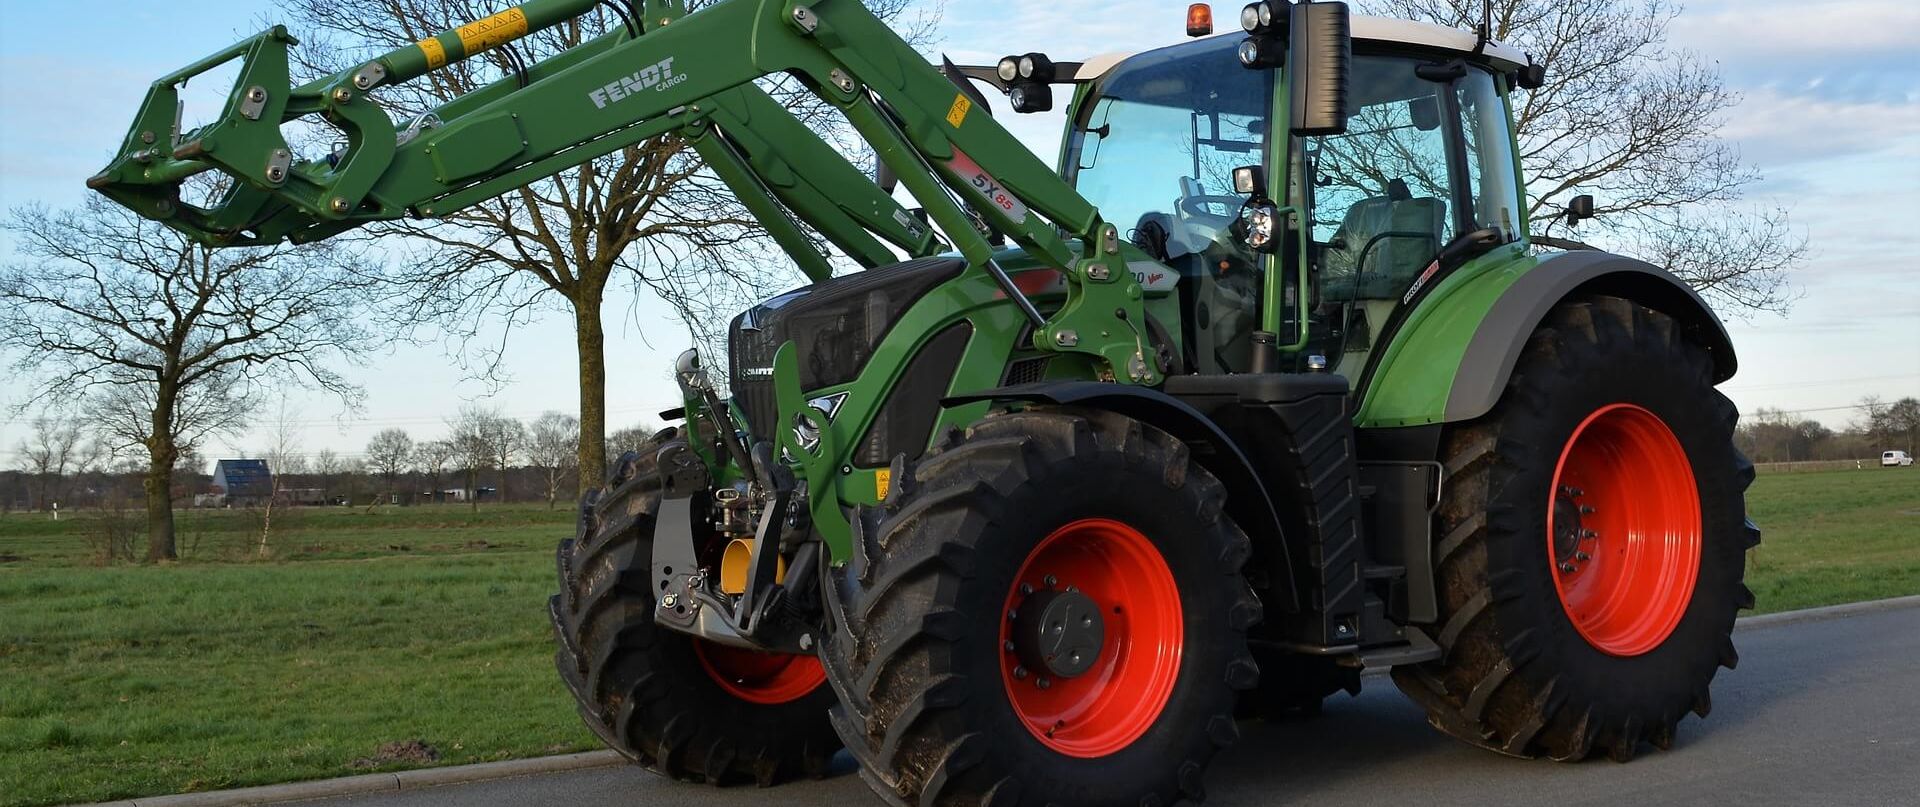 Bilde av en grønn Fendt traktor